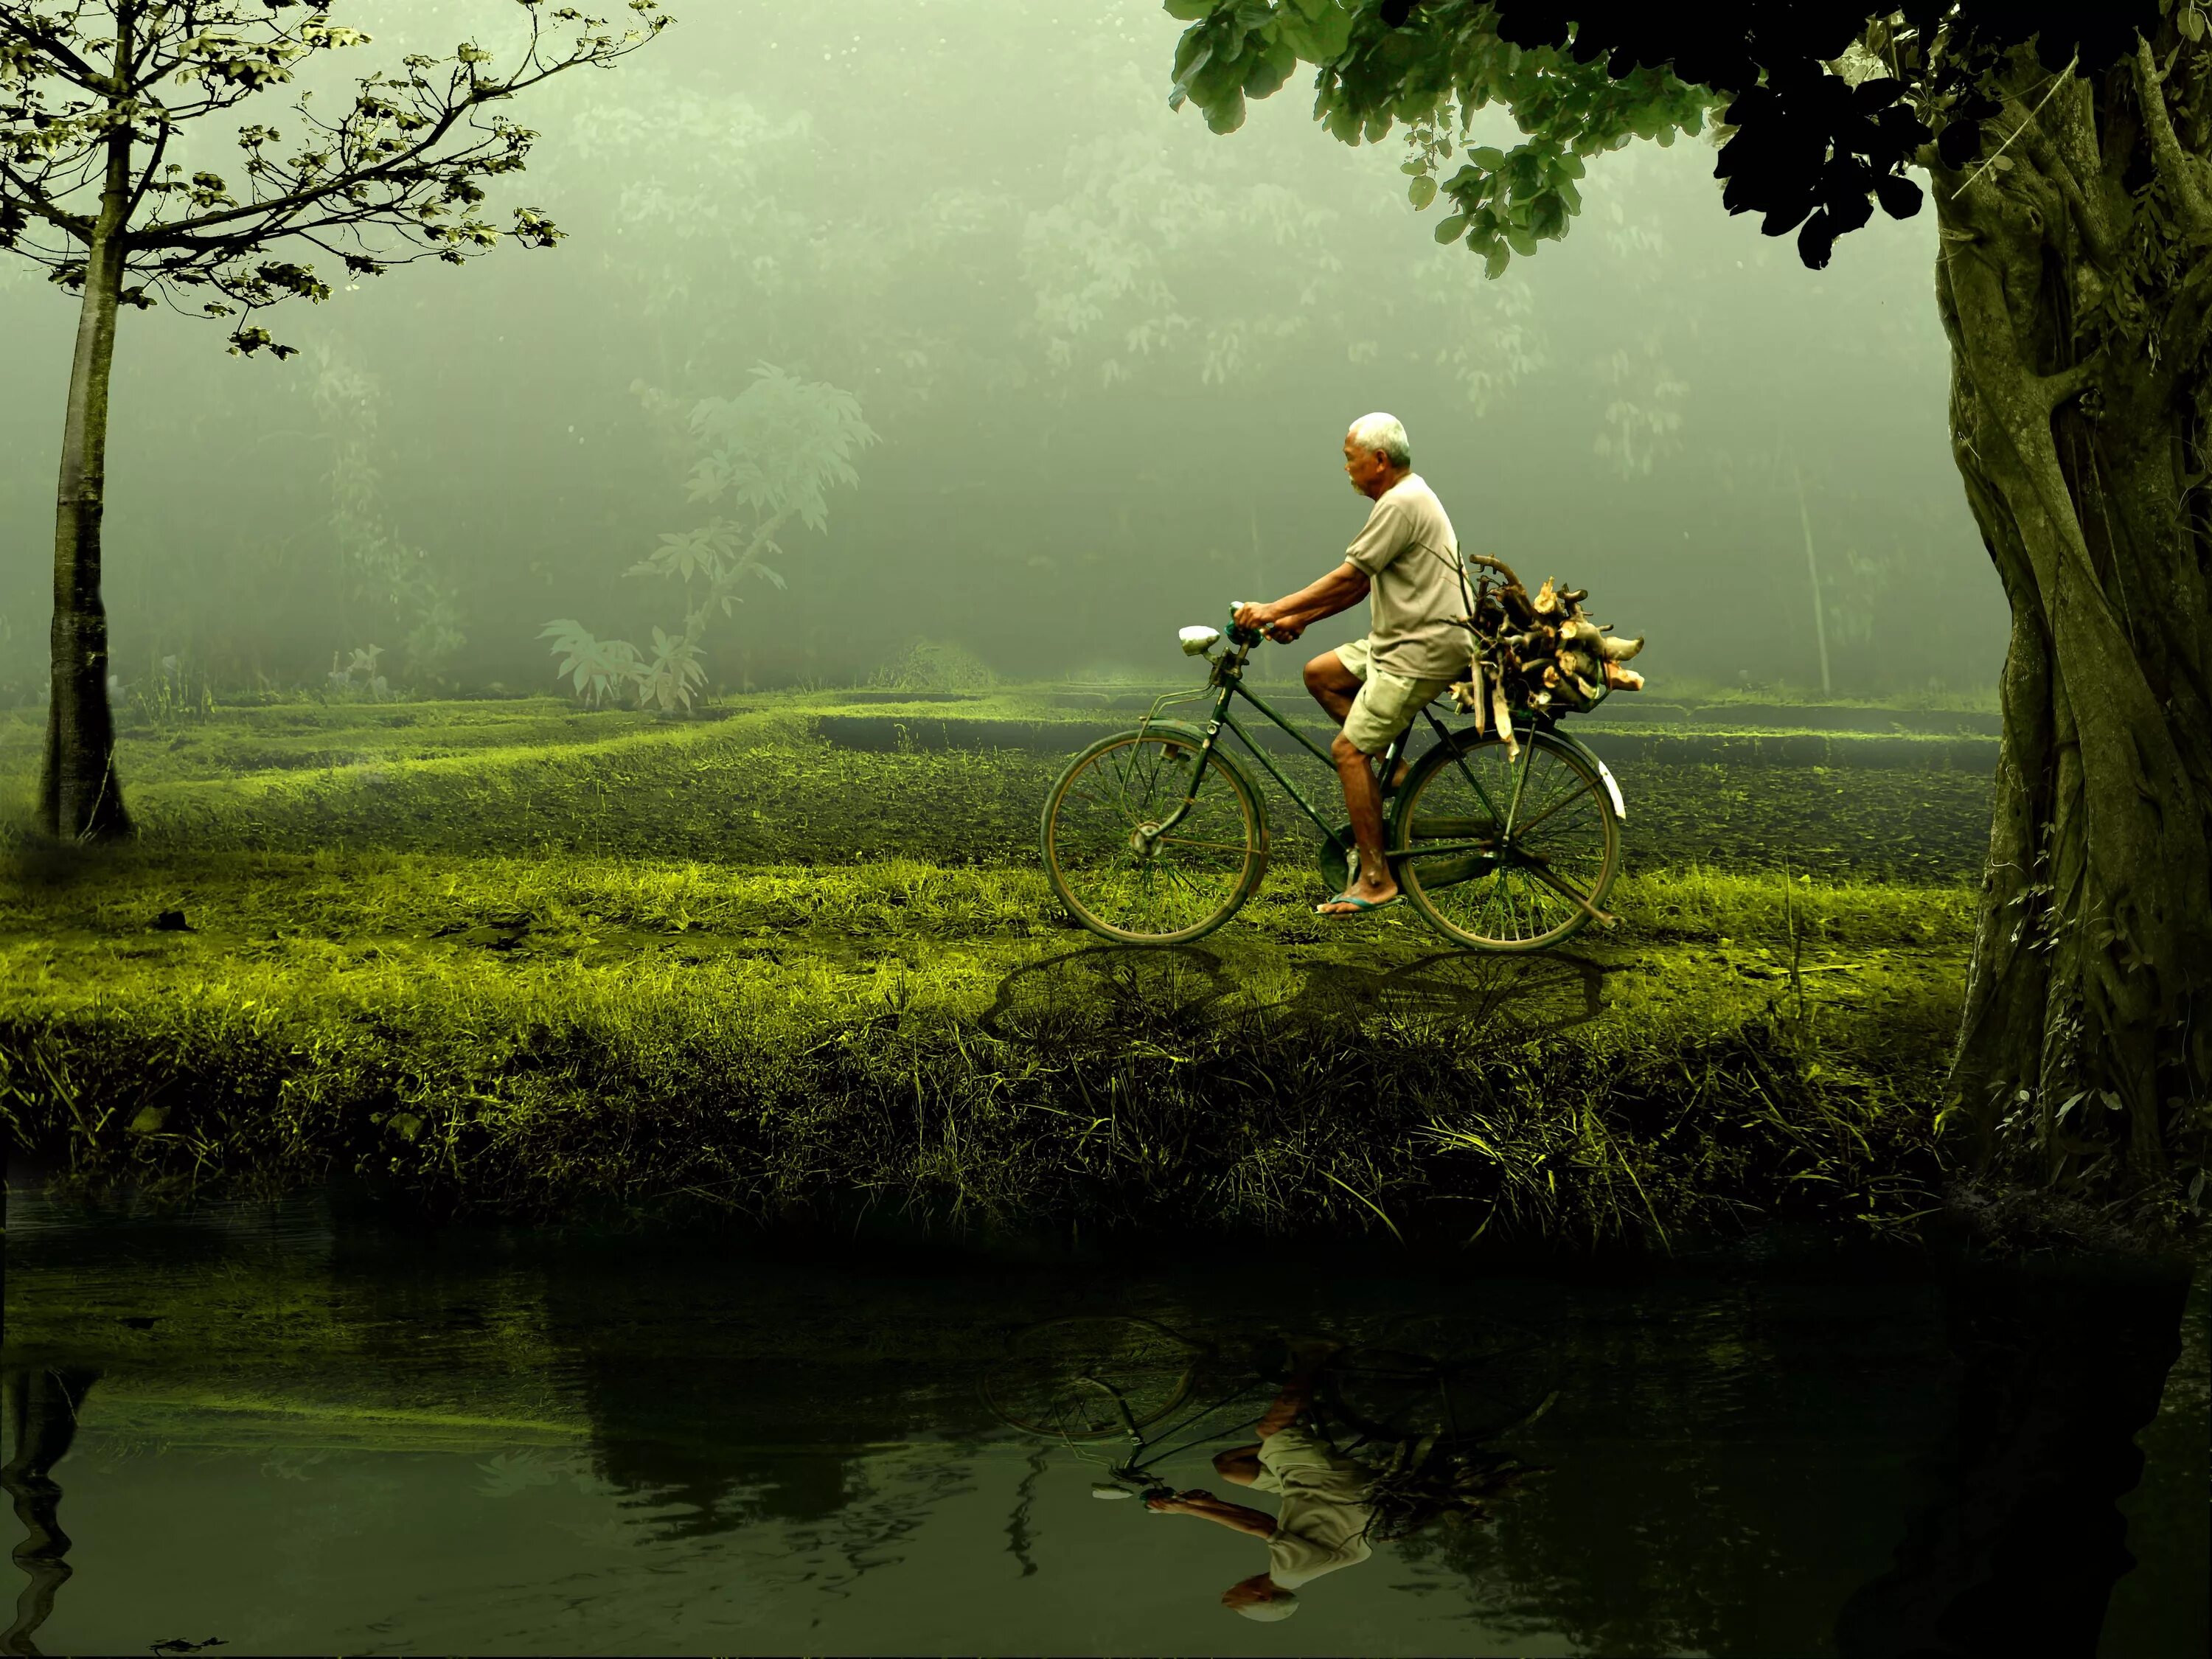 Человек и природа. Велосипед на природе. Человеческая природа. Изображение людей на природе. Предмет связанный с природой